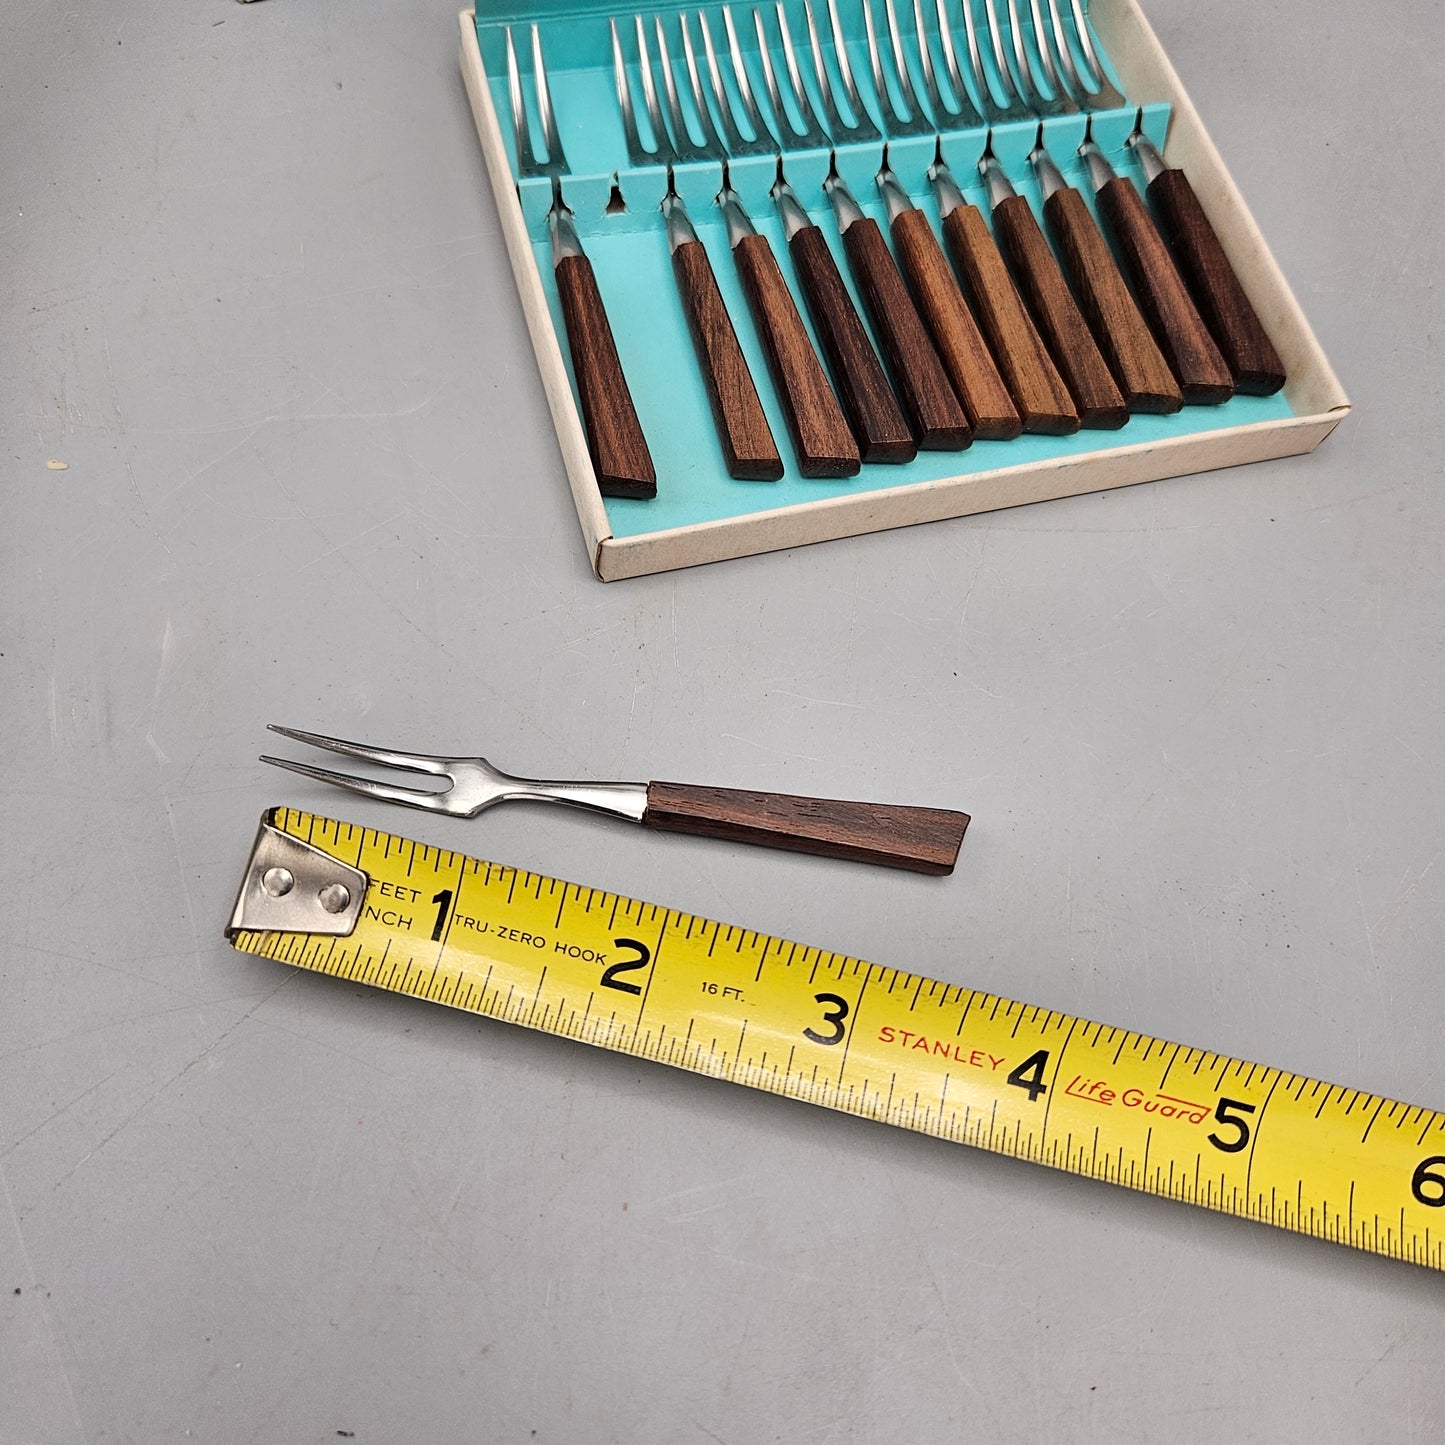 Set of 12 Vintage Teakwood 18-8 Stainless Steel Forks - Made in Japan